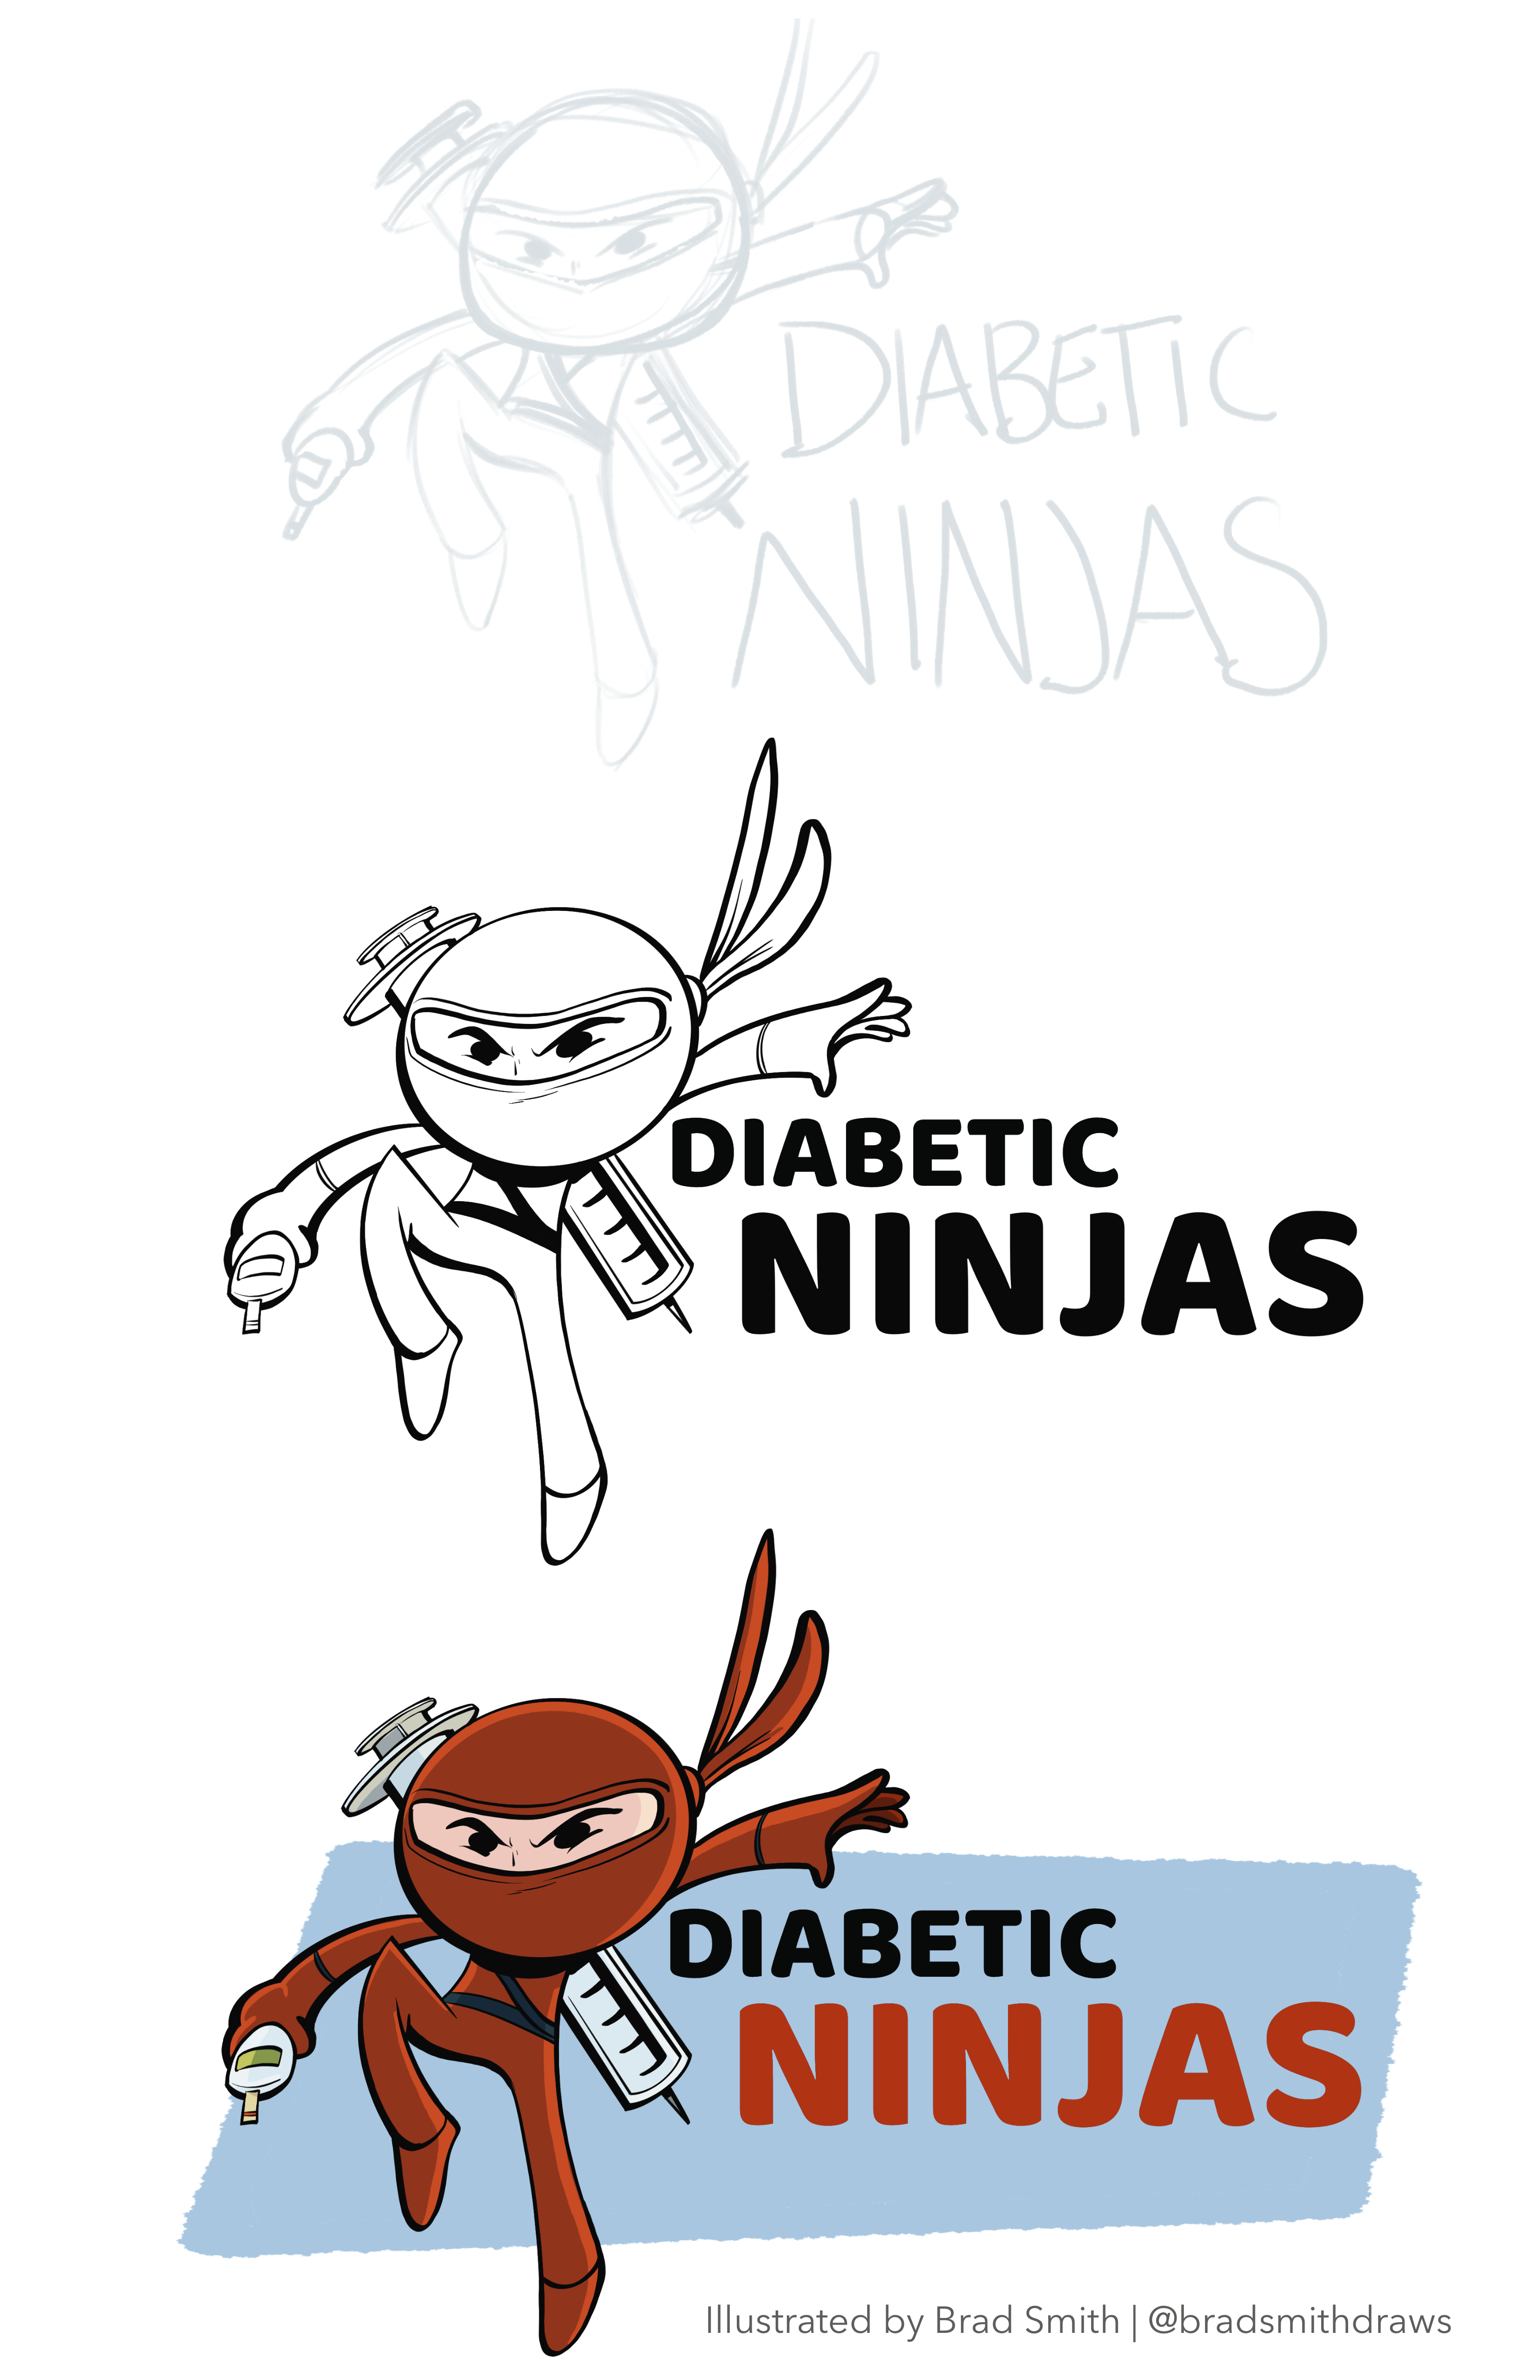 T1D – Diabetic Ninja Team Design for JDRF